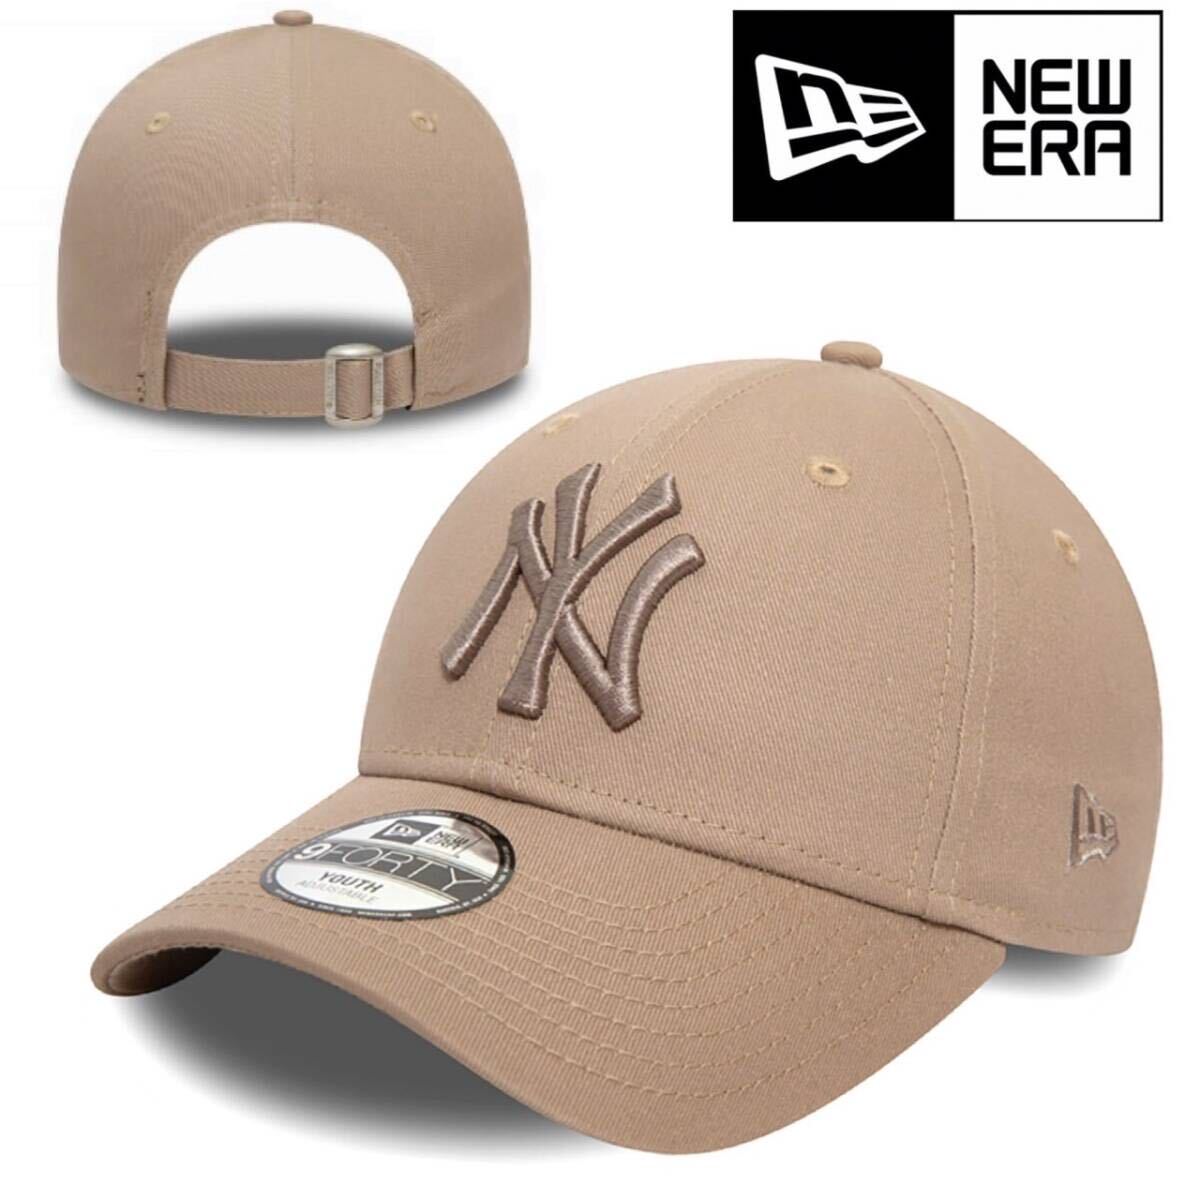 ニューエラ キャップ 帽子 9FORTY コットン素材 ヤンキース ベージュ×ベージュ ストラップ仕様 MLB NEWERA 9FORTY LEAGUE BASIC CAP 新品_画像1